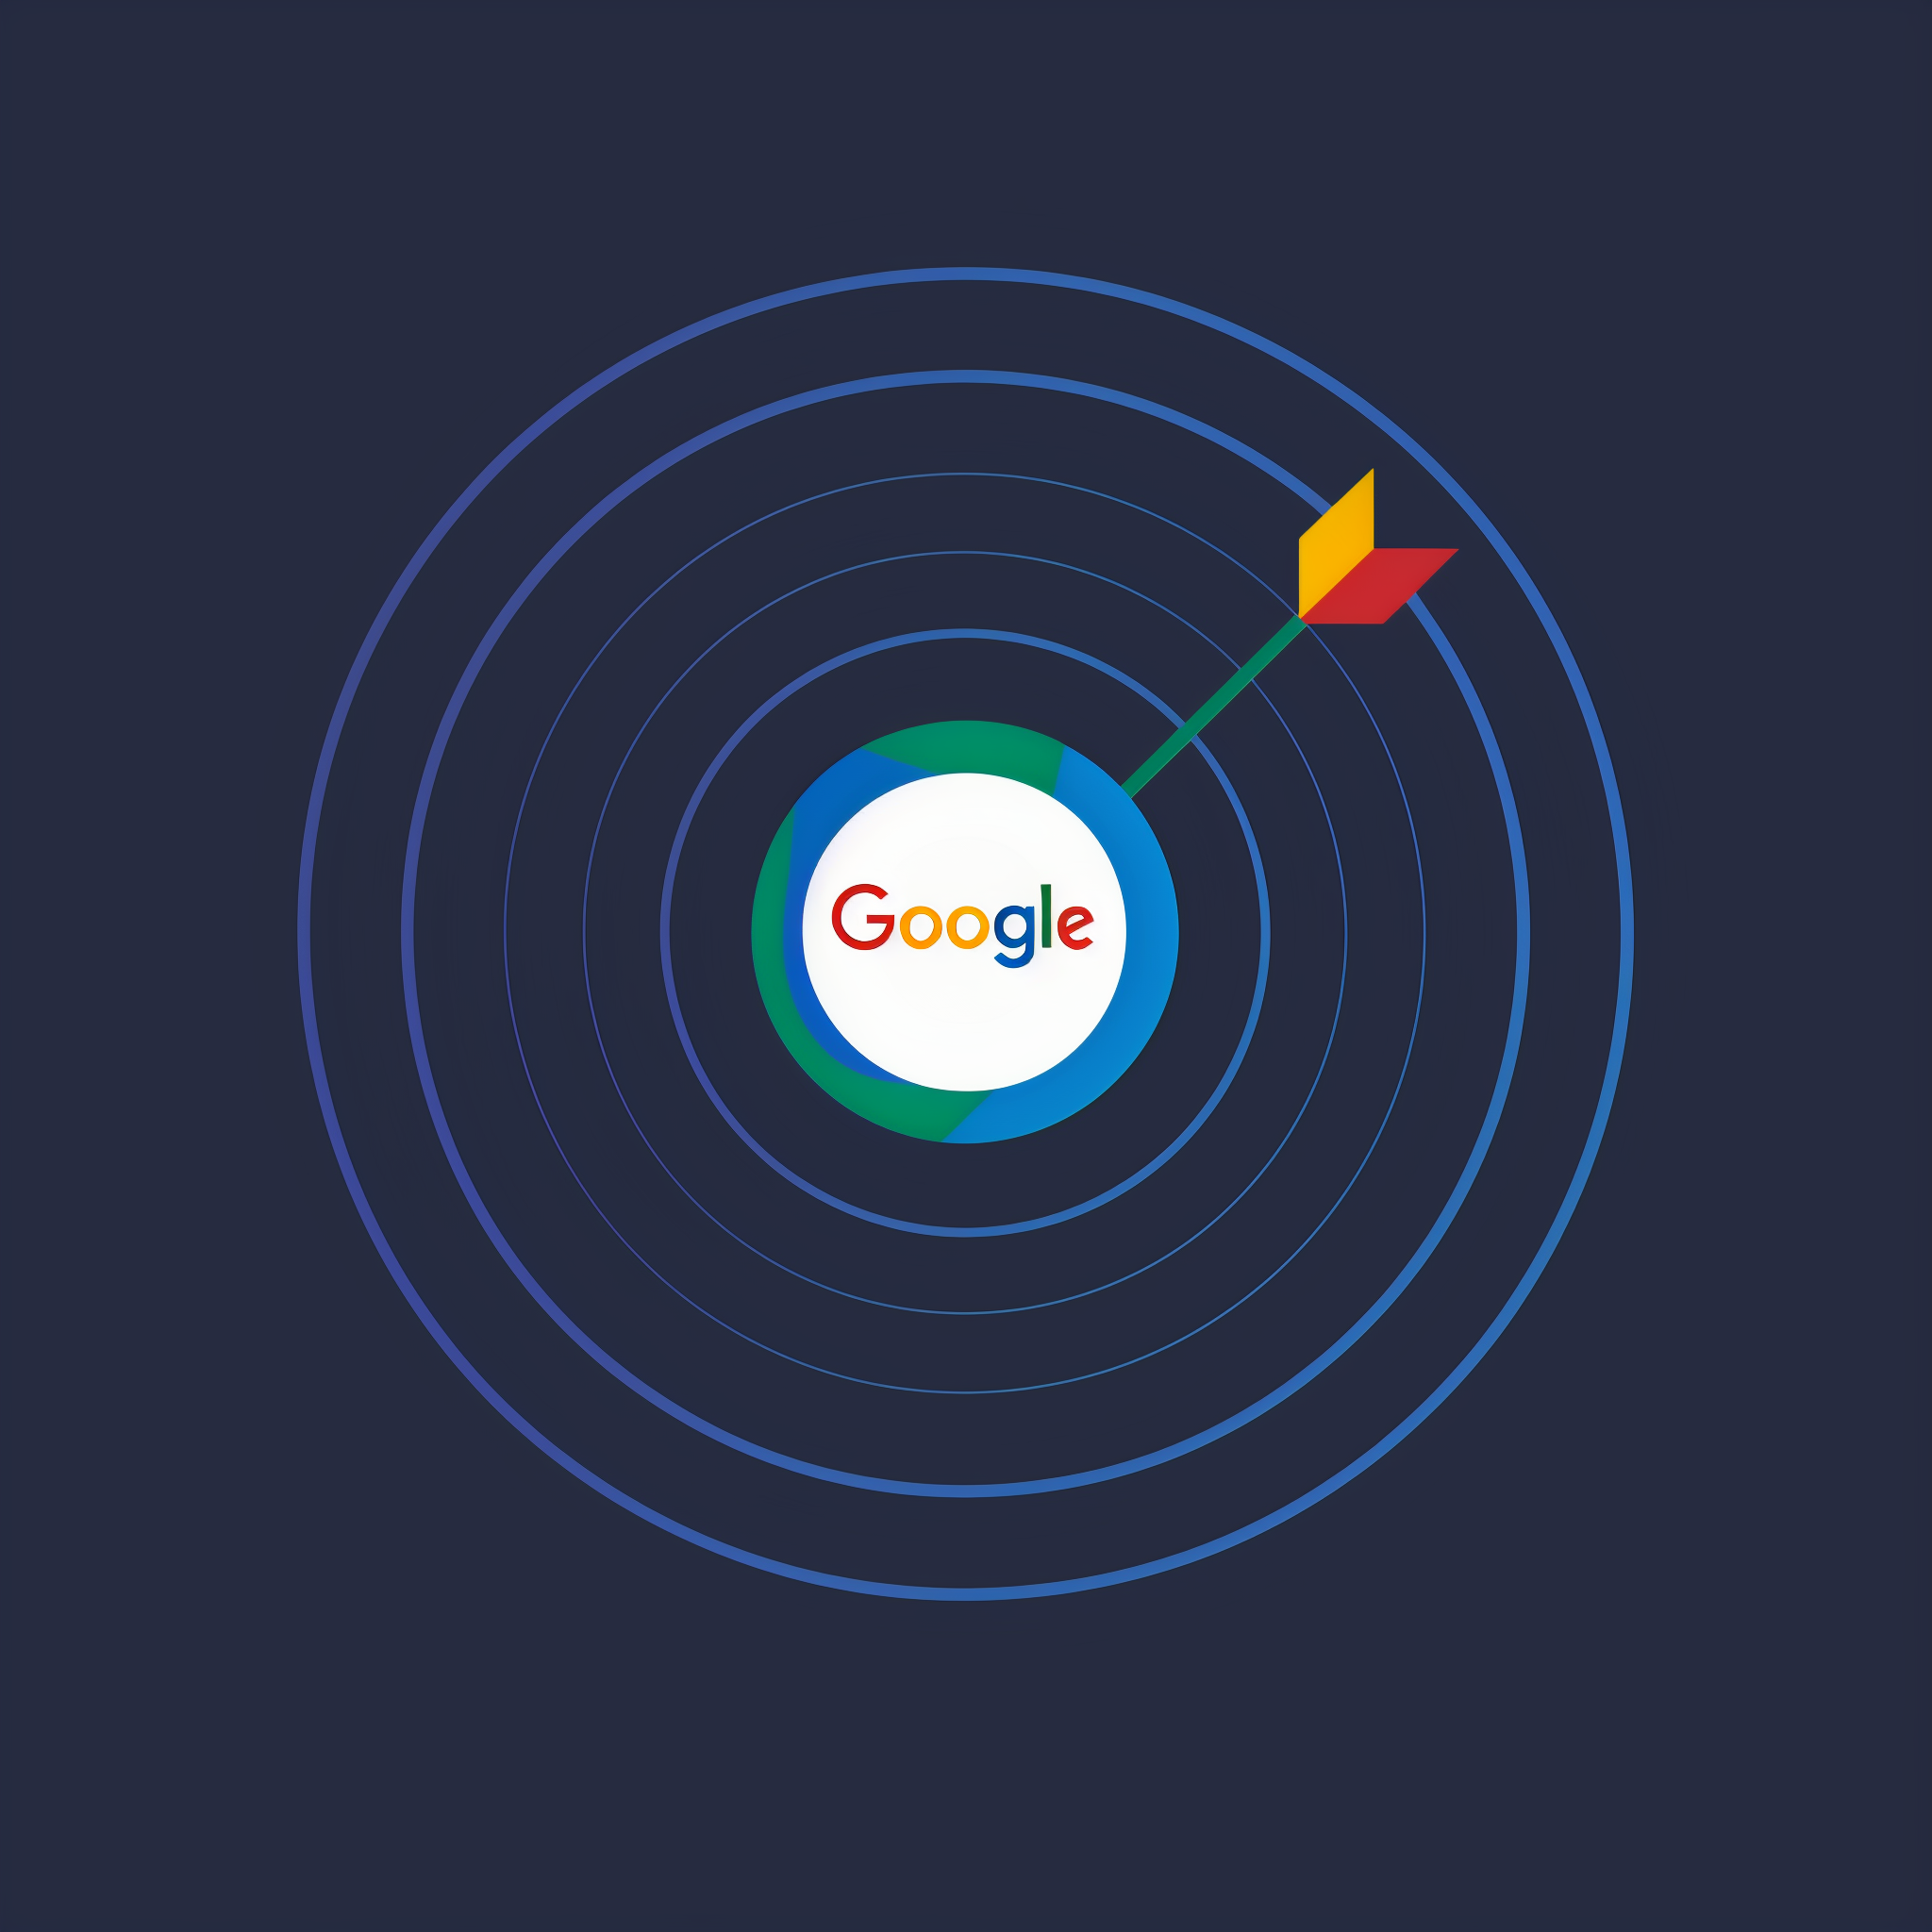 Google Werbung für Immobilienmakler, Bild zeigt eine Zielscheibe mit dem Google Logo.